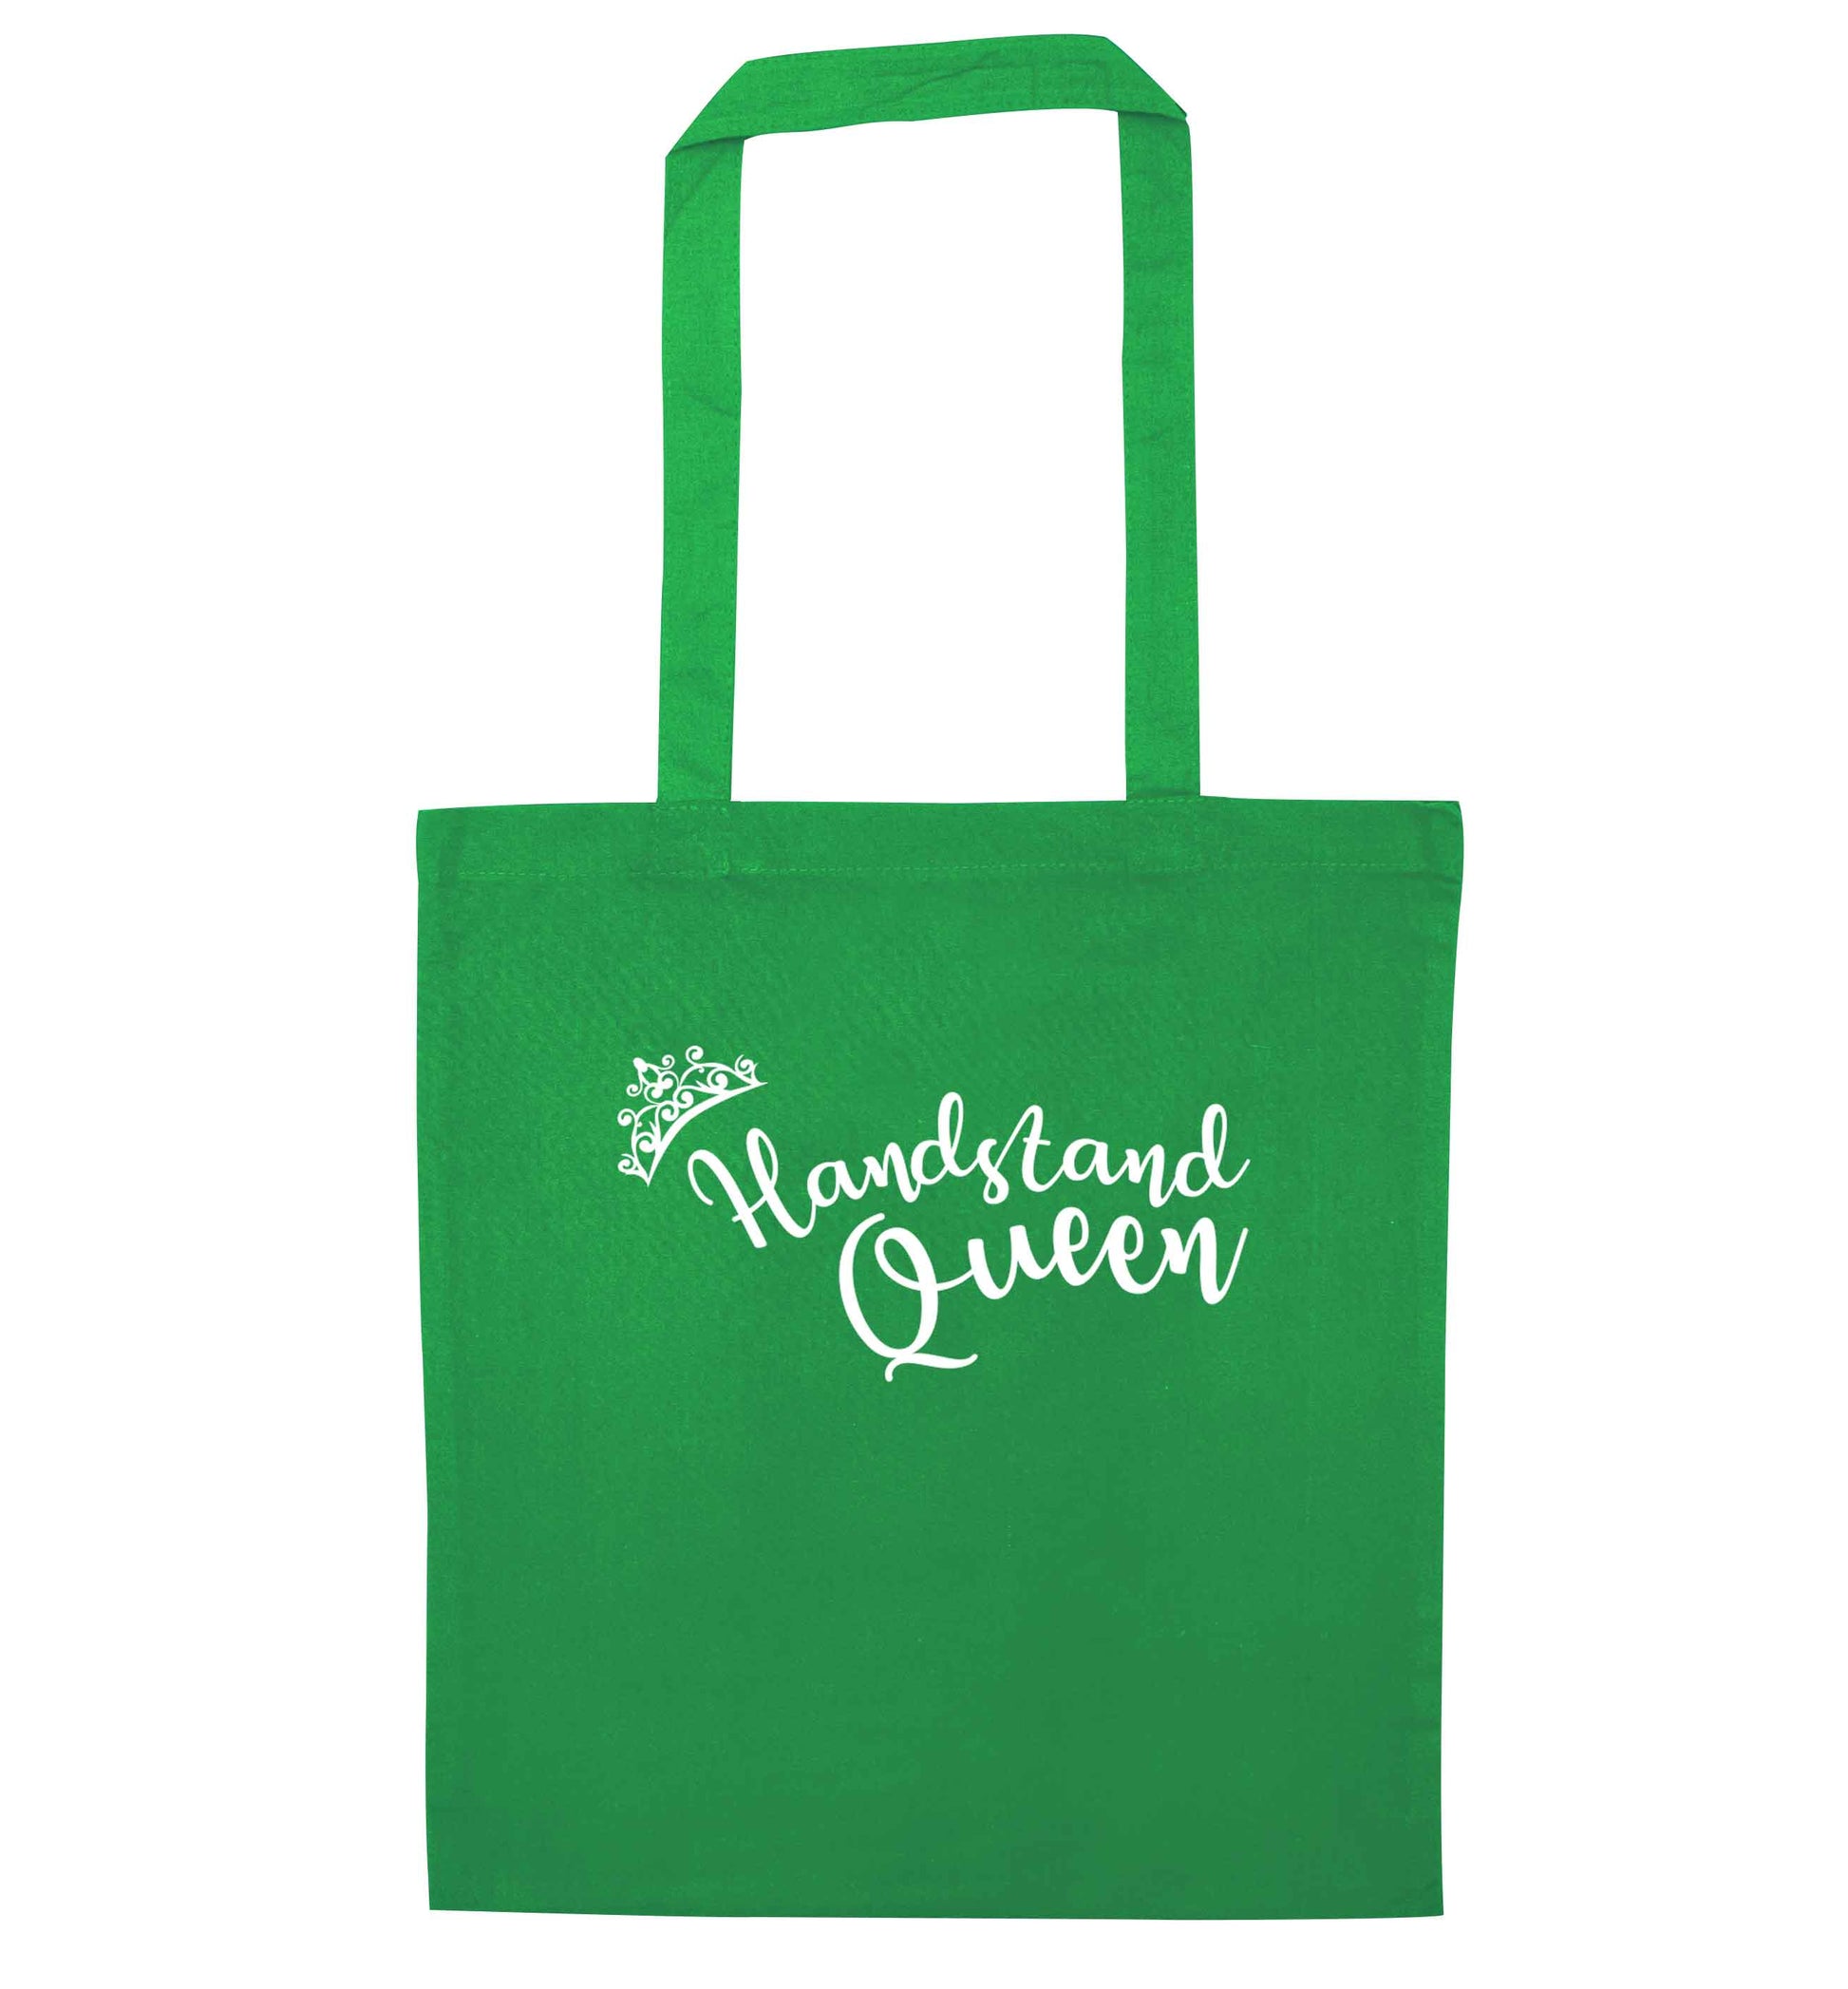 Handstand Queen green tote bag